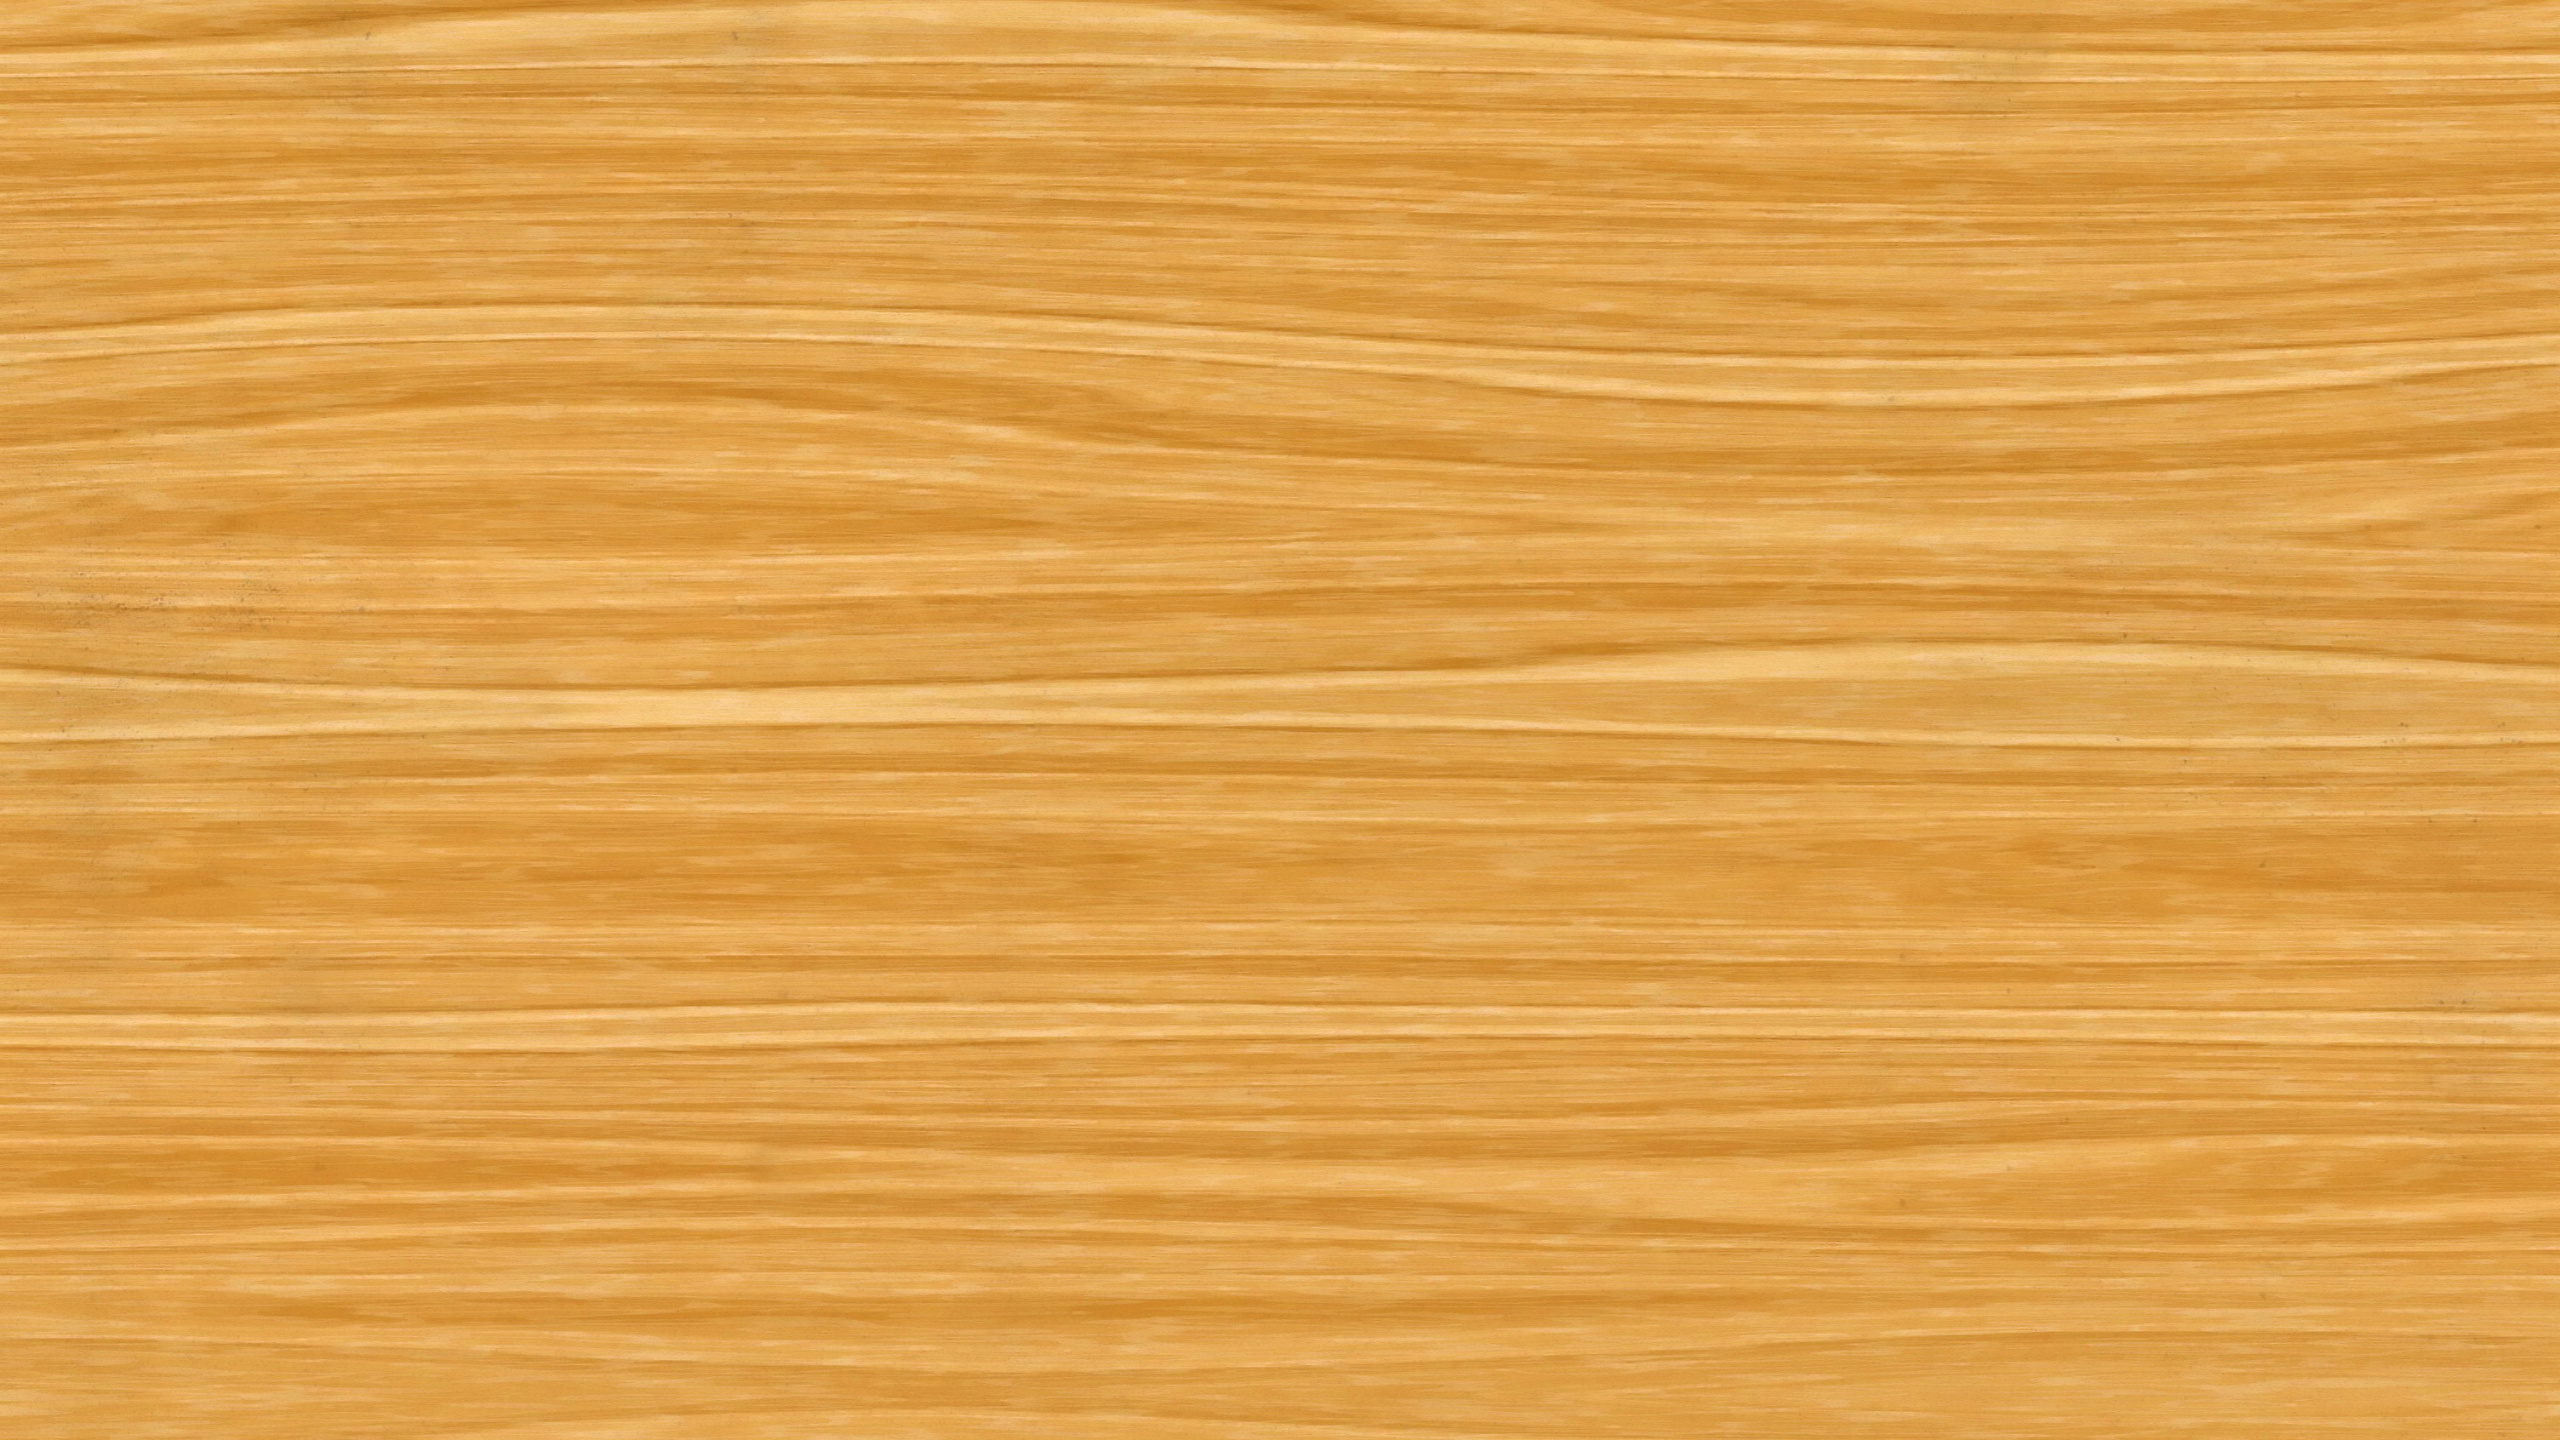 硬木, 地板, 木染色, 胶合板, 木地板 壁纸 2560x1440 允许